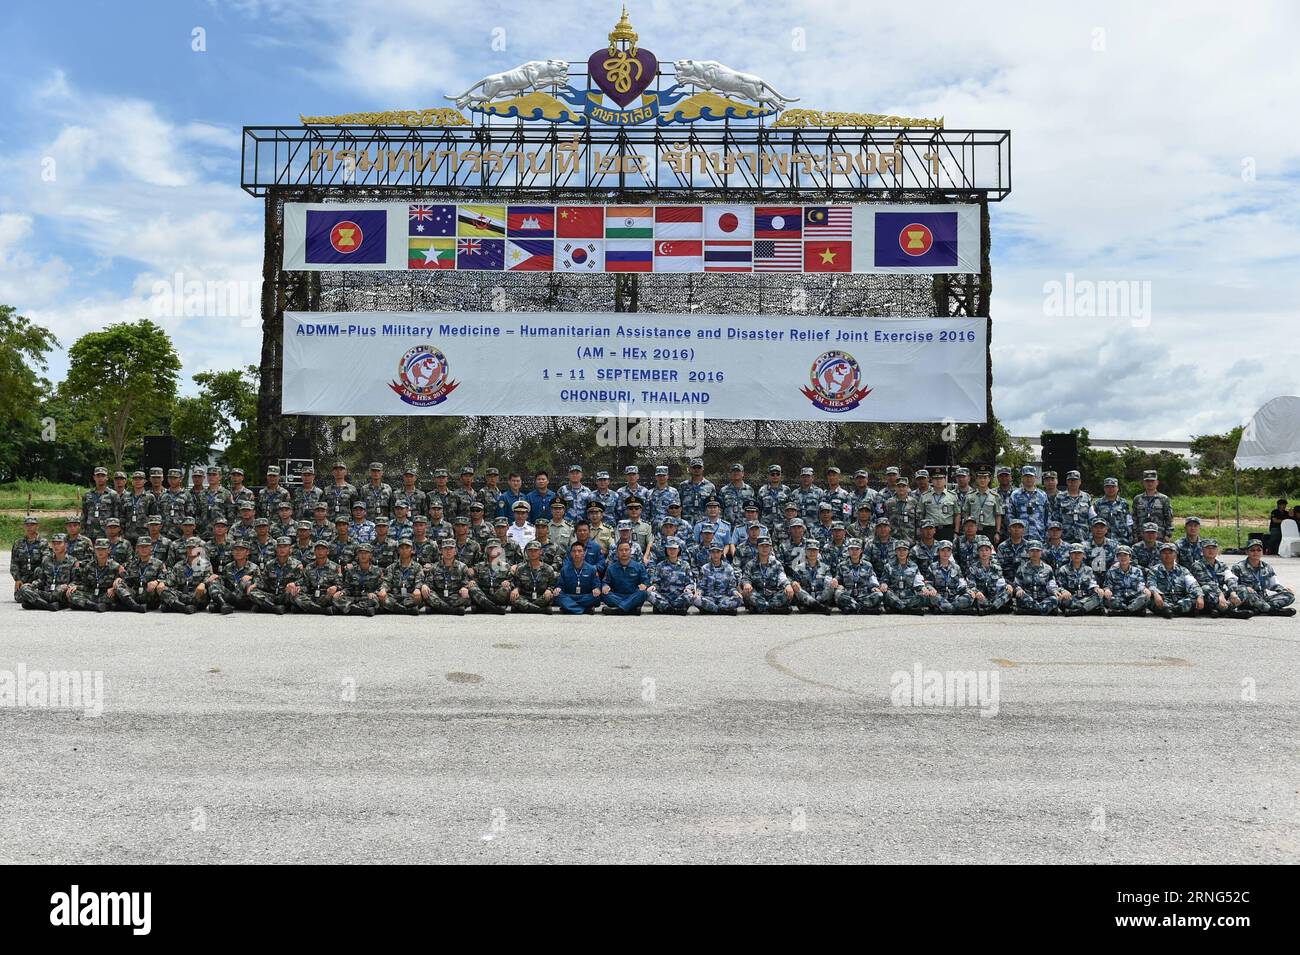 (160905) -- CHONBURI, 5 settembre 2016 -- i soldati cinesi posano per una foto dopo aver partecipato alla cerimonia di apertura della riunione dei ministri della difesa dell'ASEAN-Plus Military Medicine-Humanitarian Assistance and Disaster Relief Joint Exercise (AM-HEX 2016) a Chonburi, Thailandia il 5 settembre 2016. Le truppe di 18 paesi -- 10 stati membri dell'ASEAN e i suoi otto partner di dialogo lunedì hanno iniziato un esercizio congiunto sull'assistenza umanitaria e il soccorso in caso di catastrofi qui in Thailandia. ) THAILAND-CHONBURI-JOINT EXERCISE-AM-HEX 2016 LixMangmang PUBLICATIONxNOTxINxCHN 160905 Chonburi 5 settembre 2016 soldati cinesi po Foto Stock